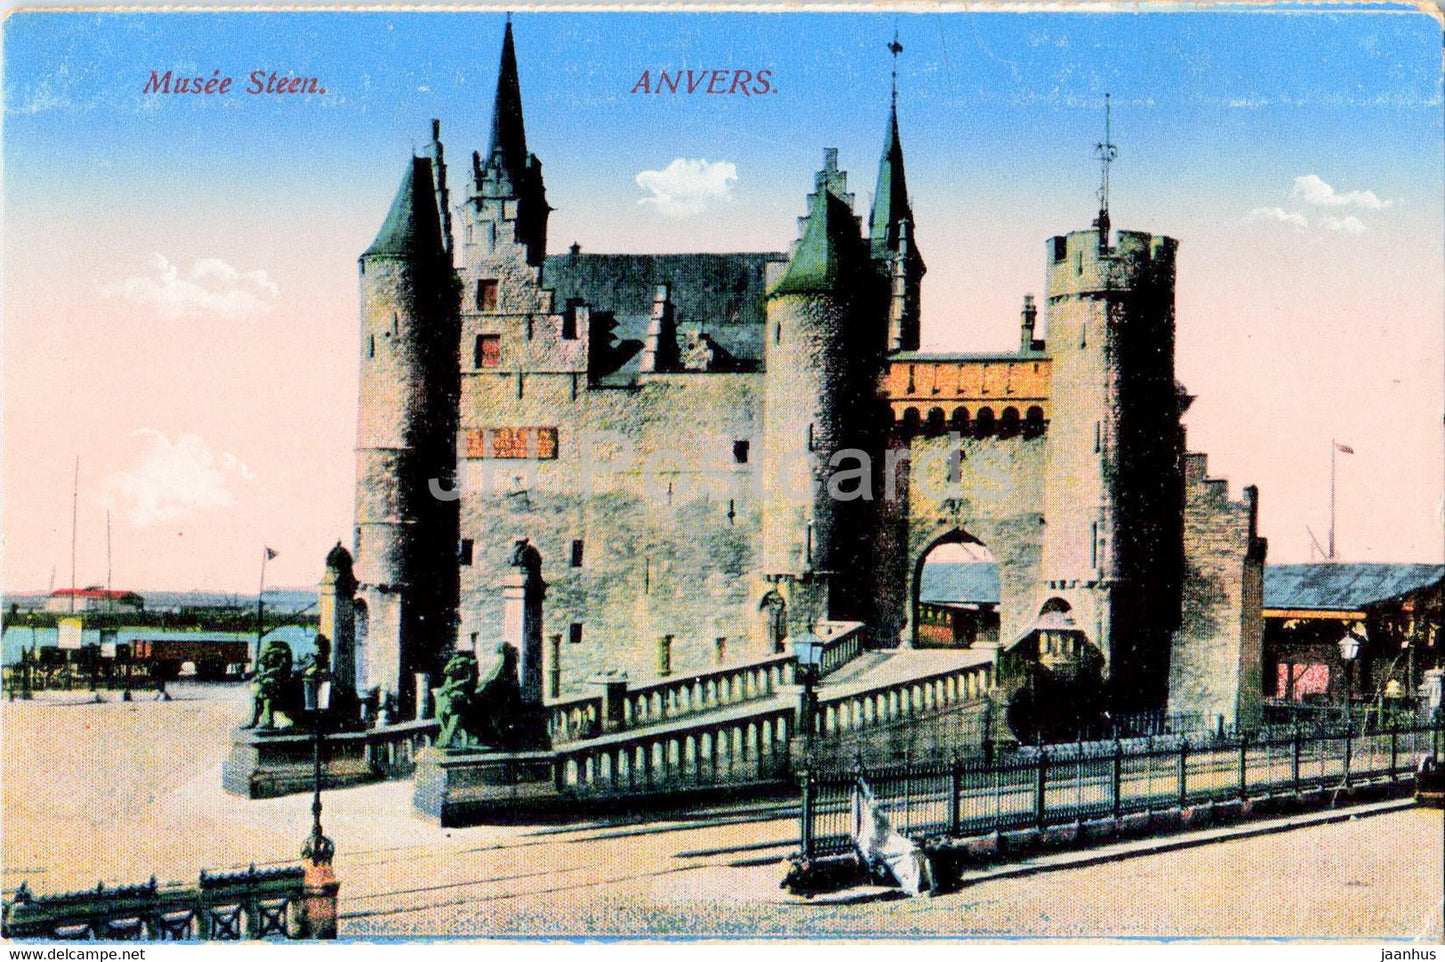 Anvers - Antwerpen - Musee Steen - museum - old postcard - 1916 - Belgium - used - JH Postcards